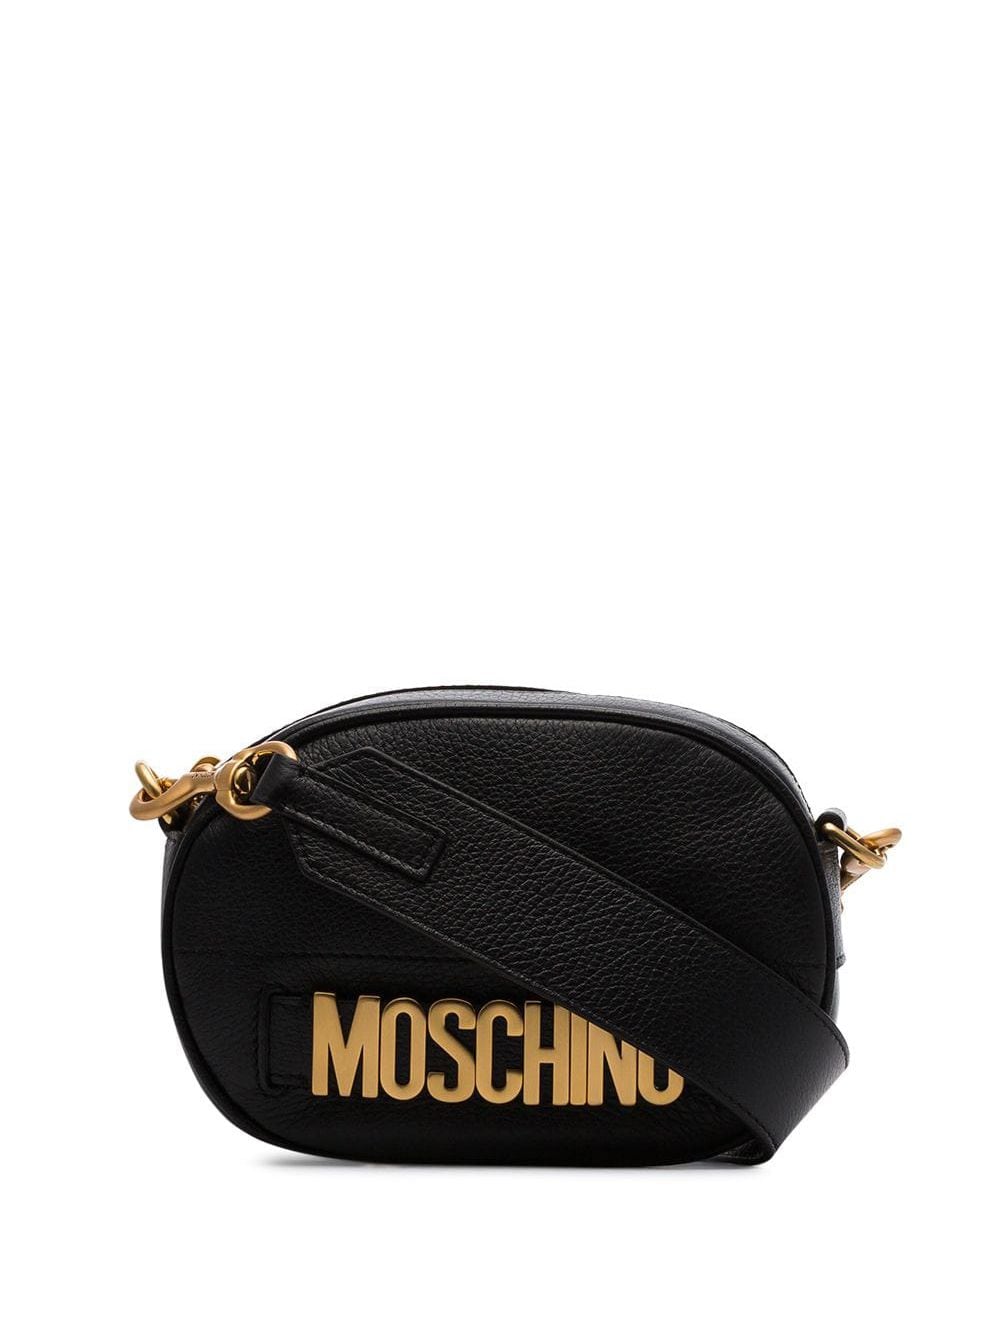 Moschino black logo leather camera bag 